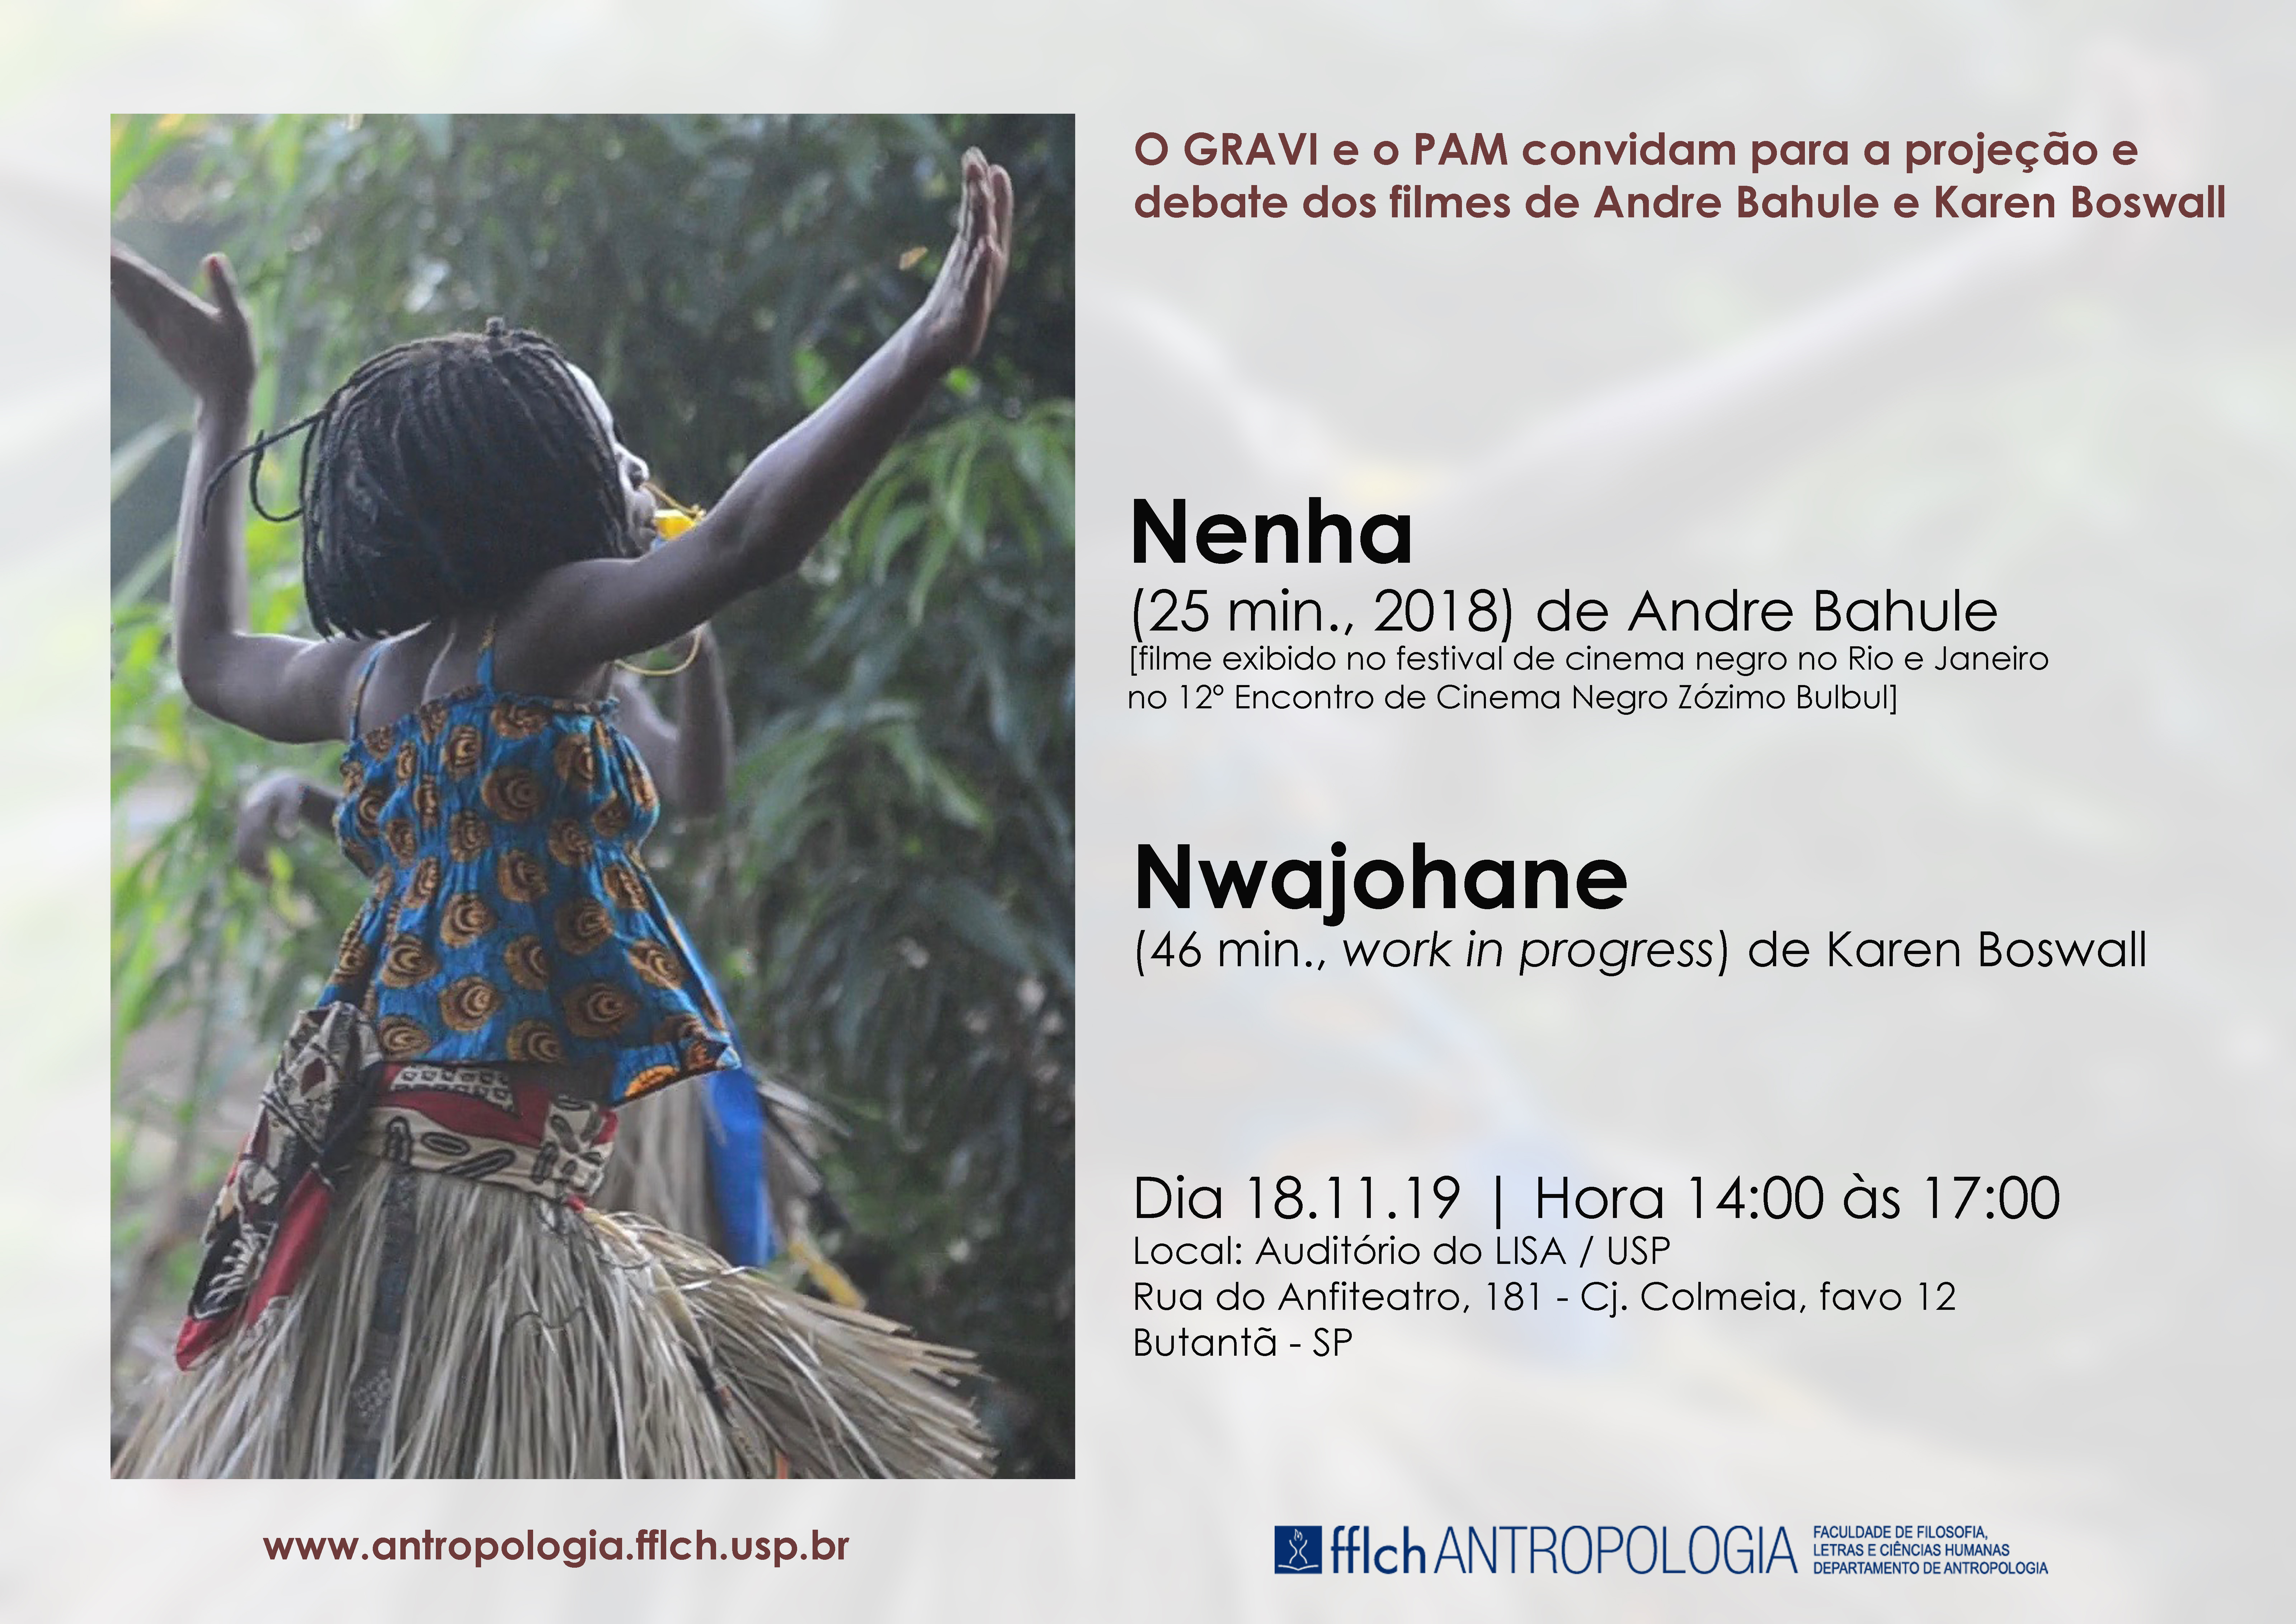 Projeção e debate dos filmes  "Nenha" (de Andre Bahule) e  "Nwajohane" (de Karen Boswall)